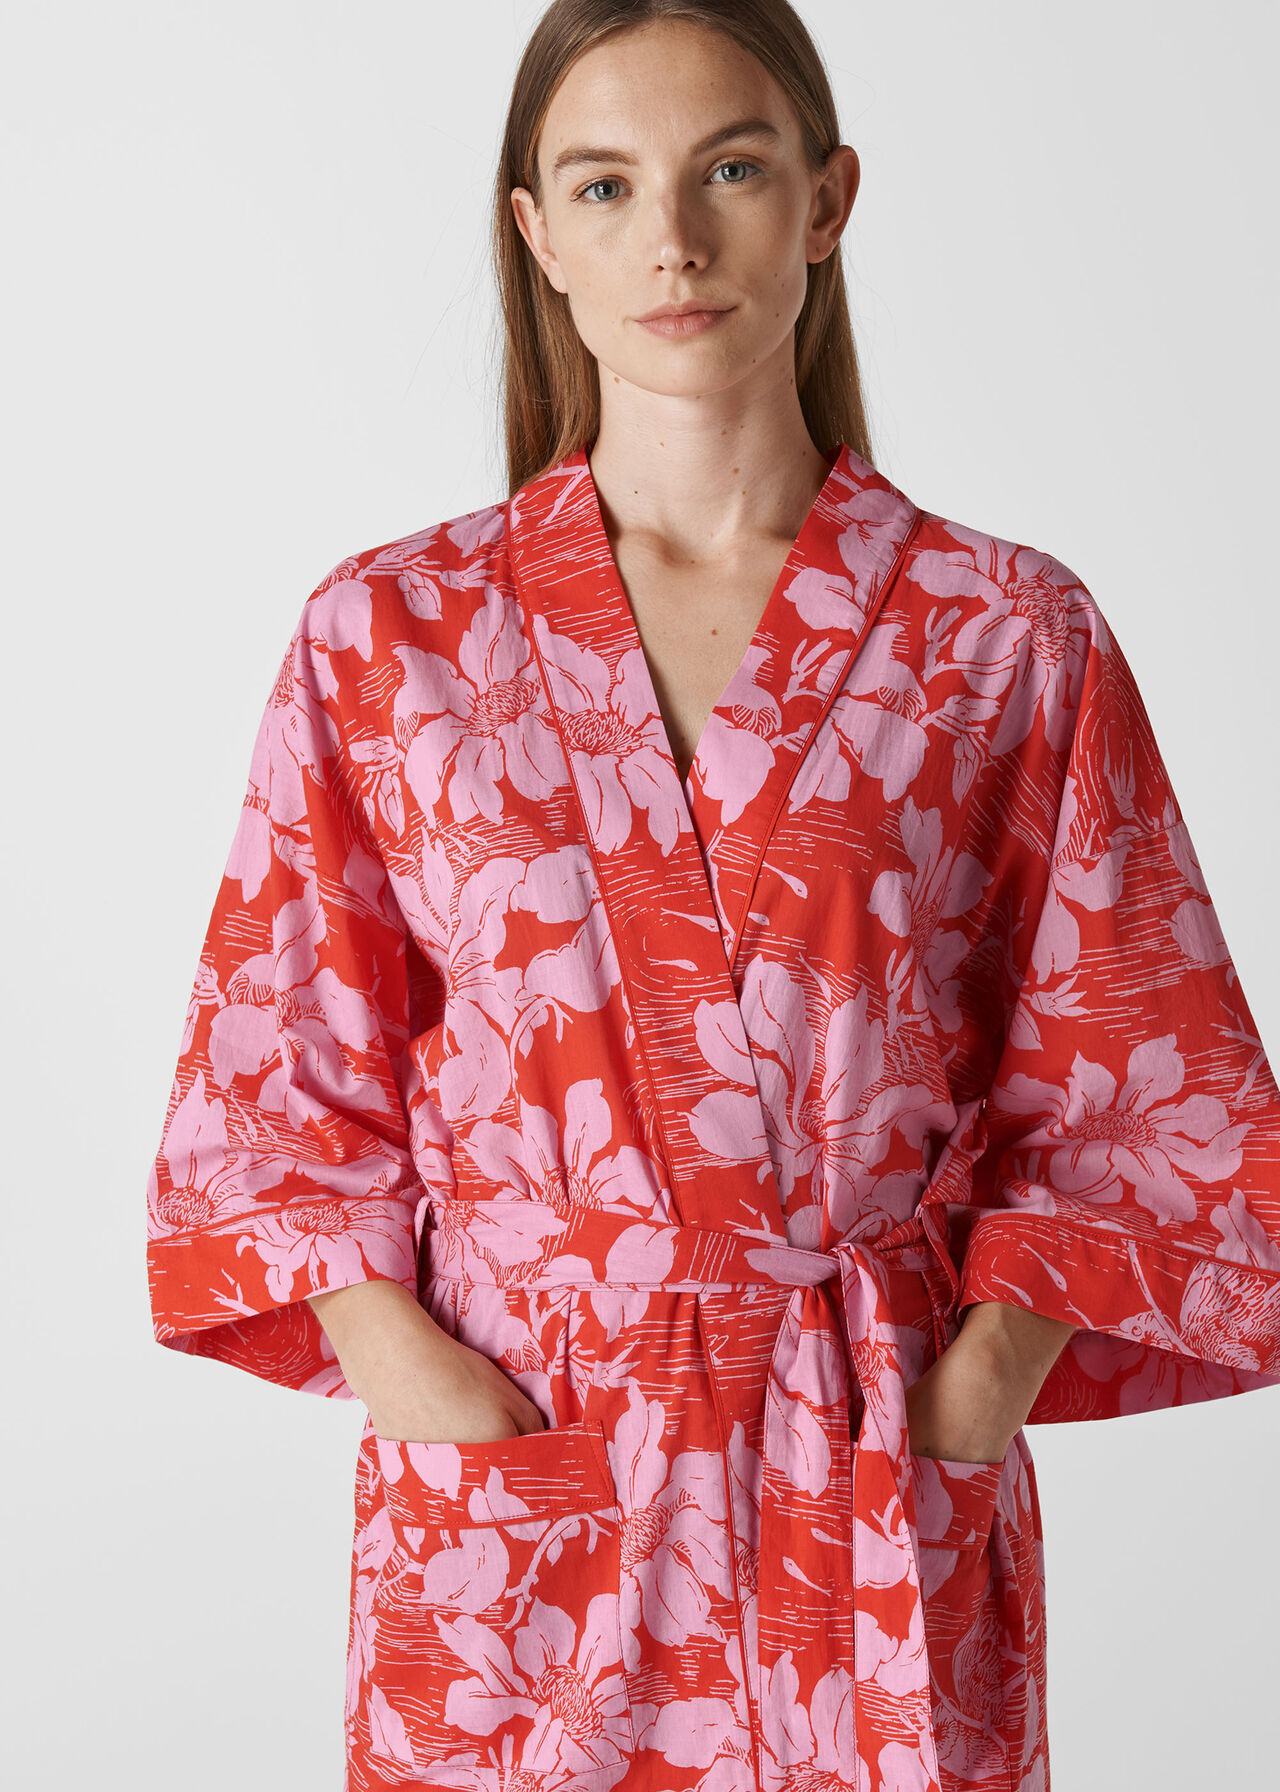 Birds Of Paradise Kimono Gown Red/Multi